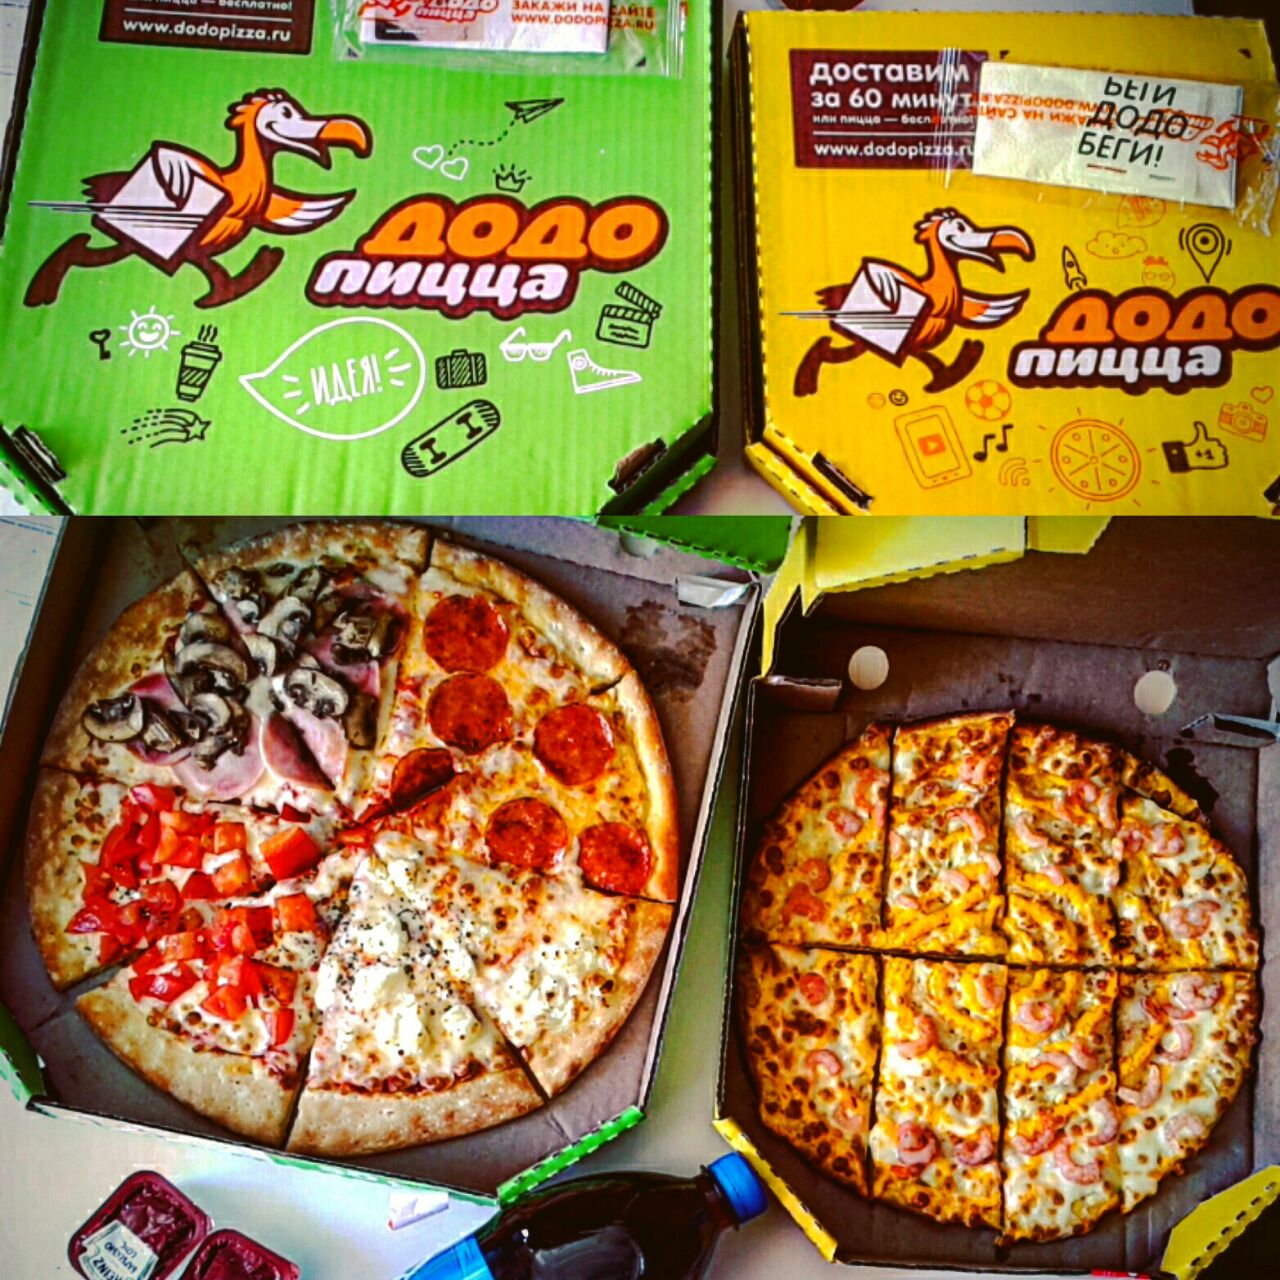 четыре сезона додо пицца отзывы фото 113